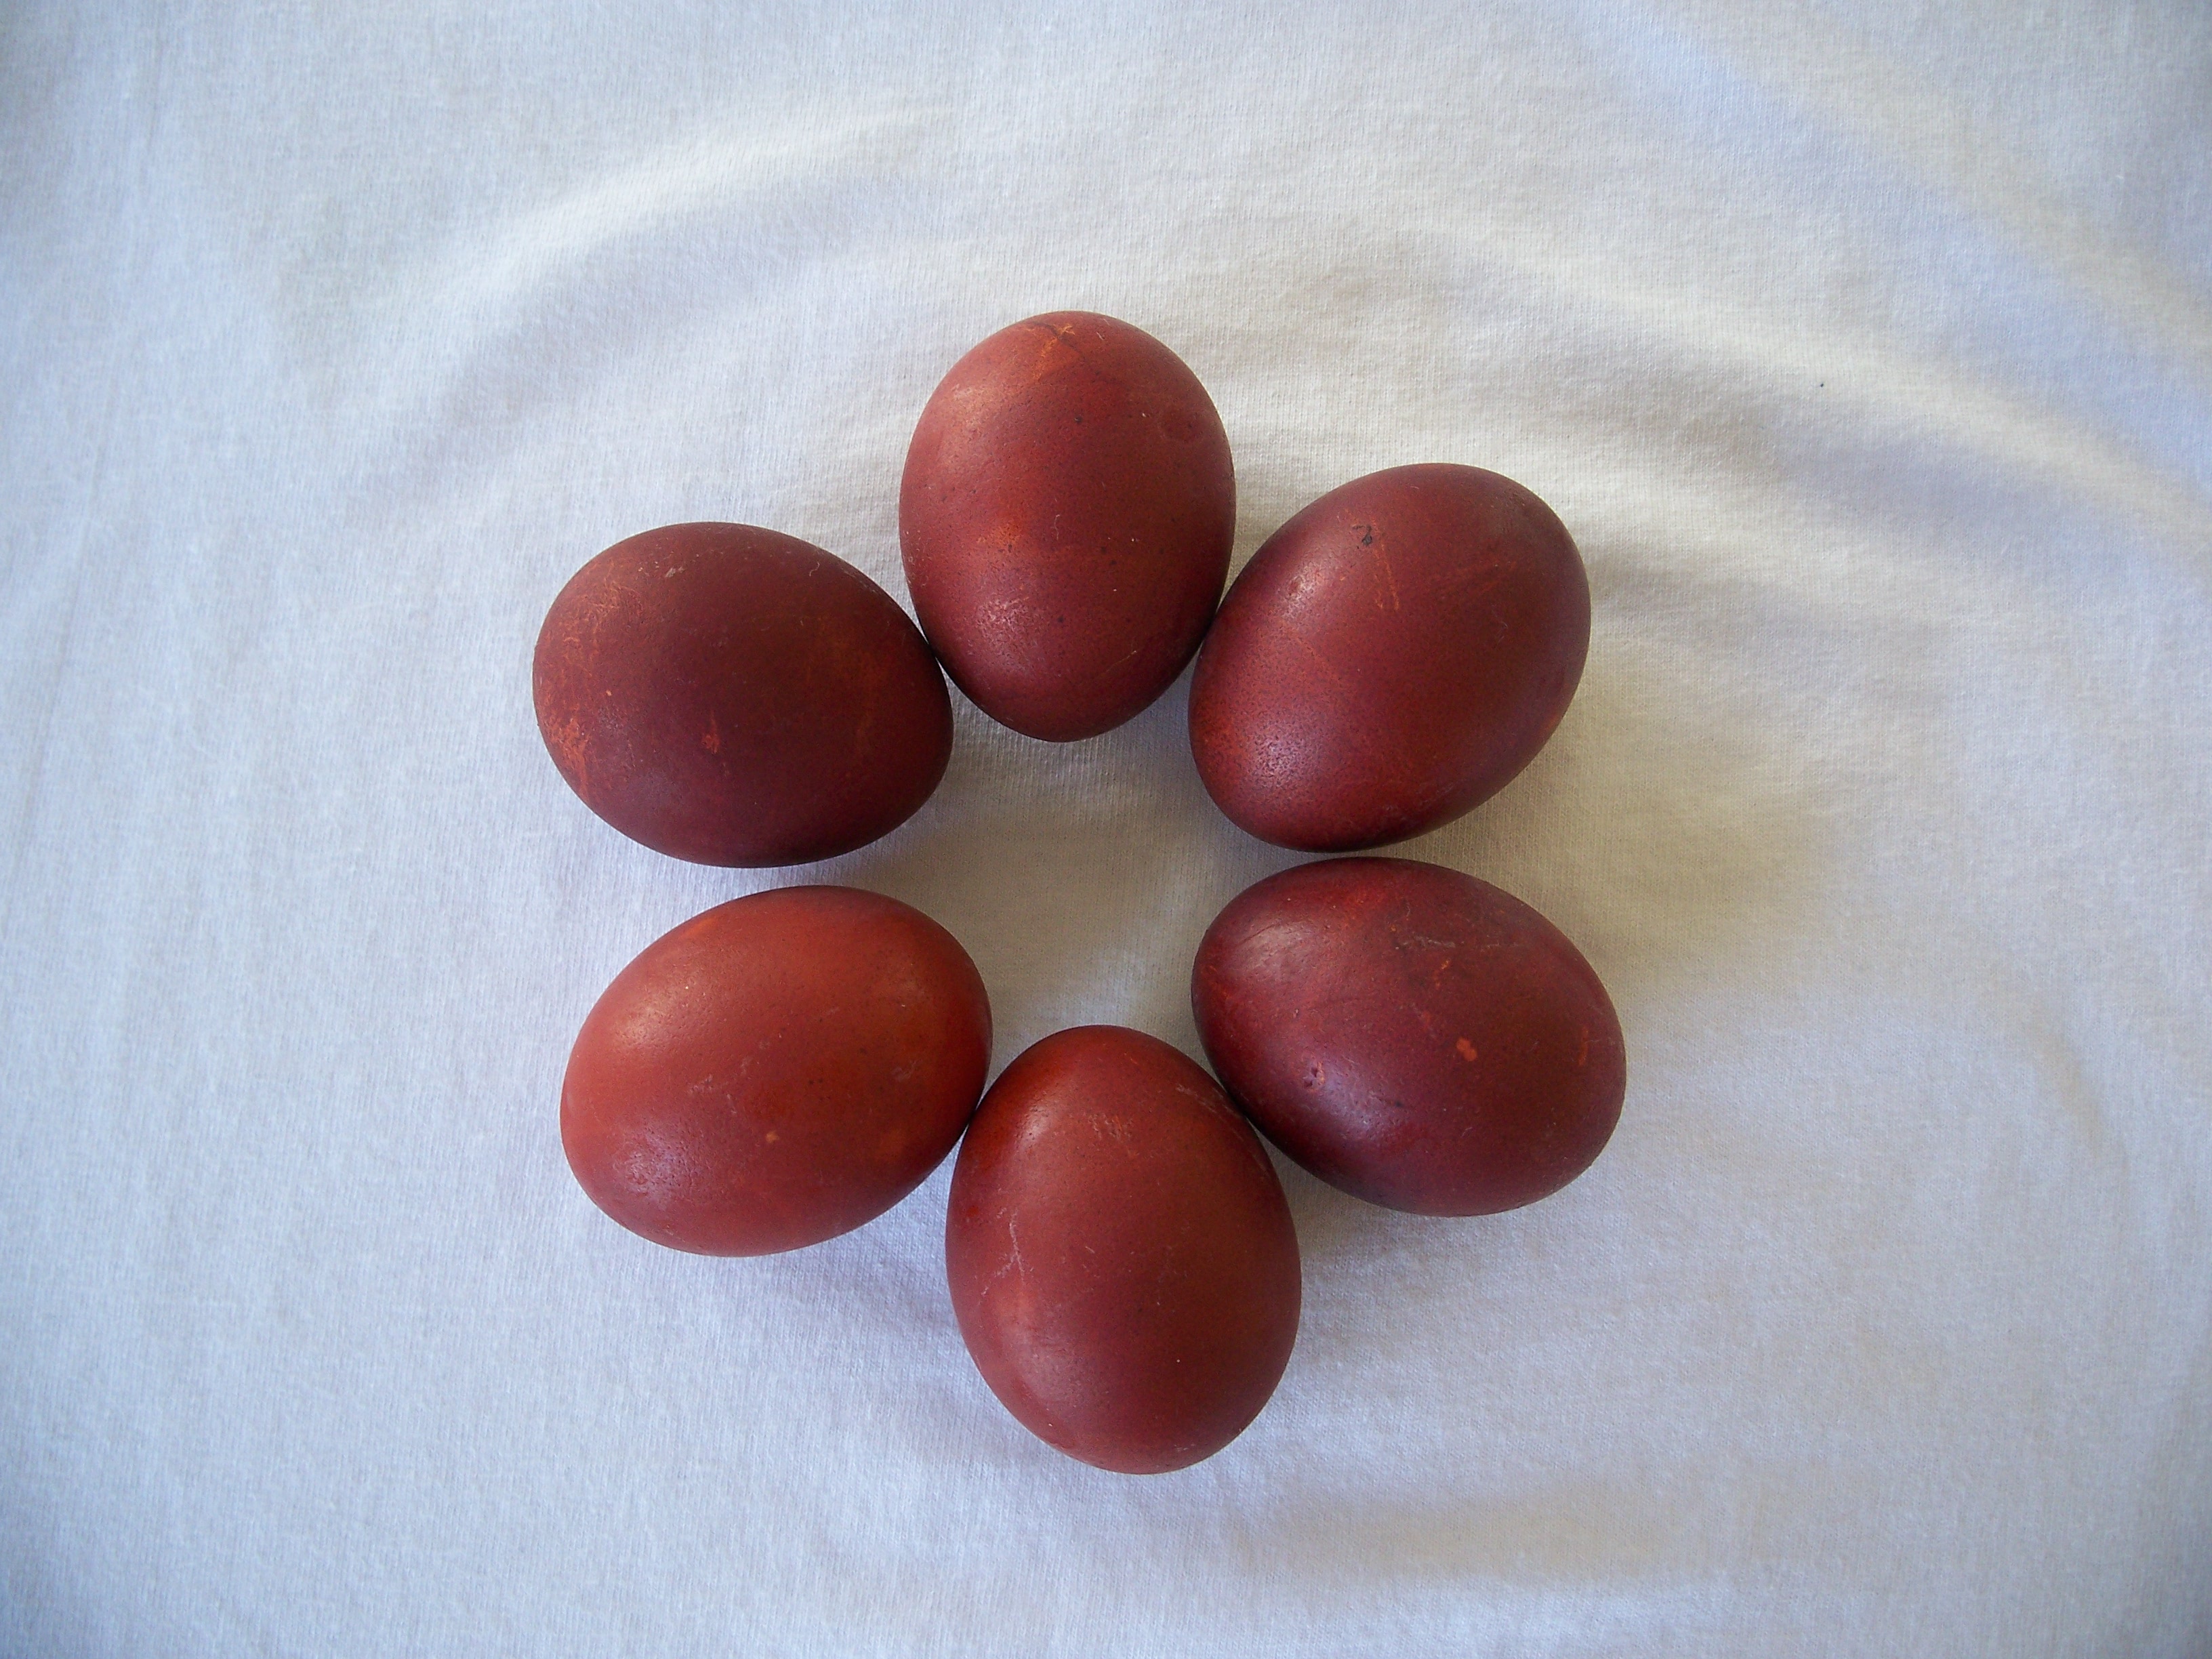 Способ покраски яиц с помощью луковой шелухи - 10 апреля 2015